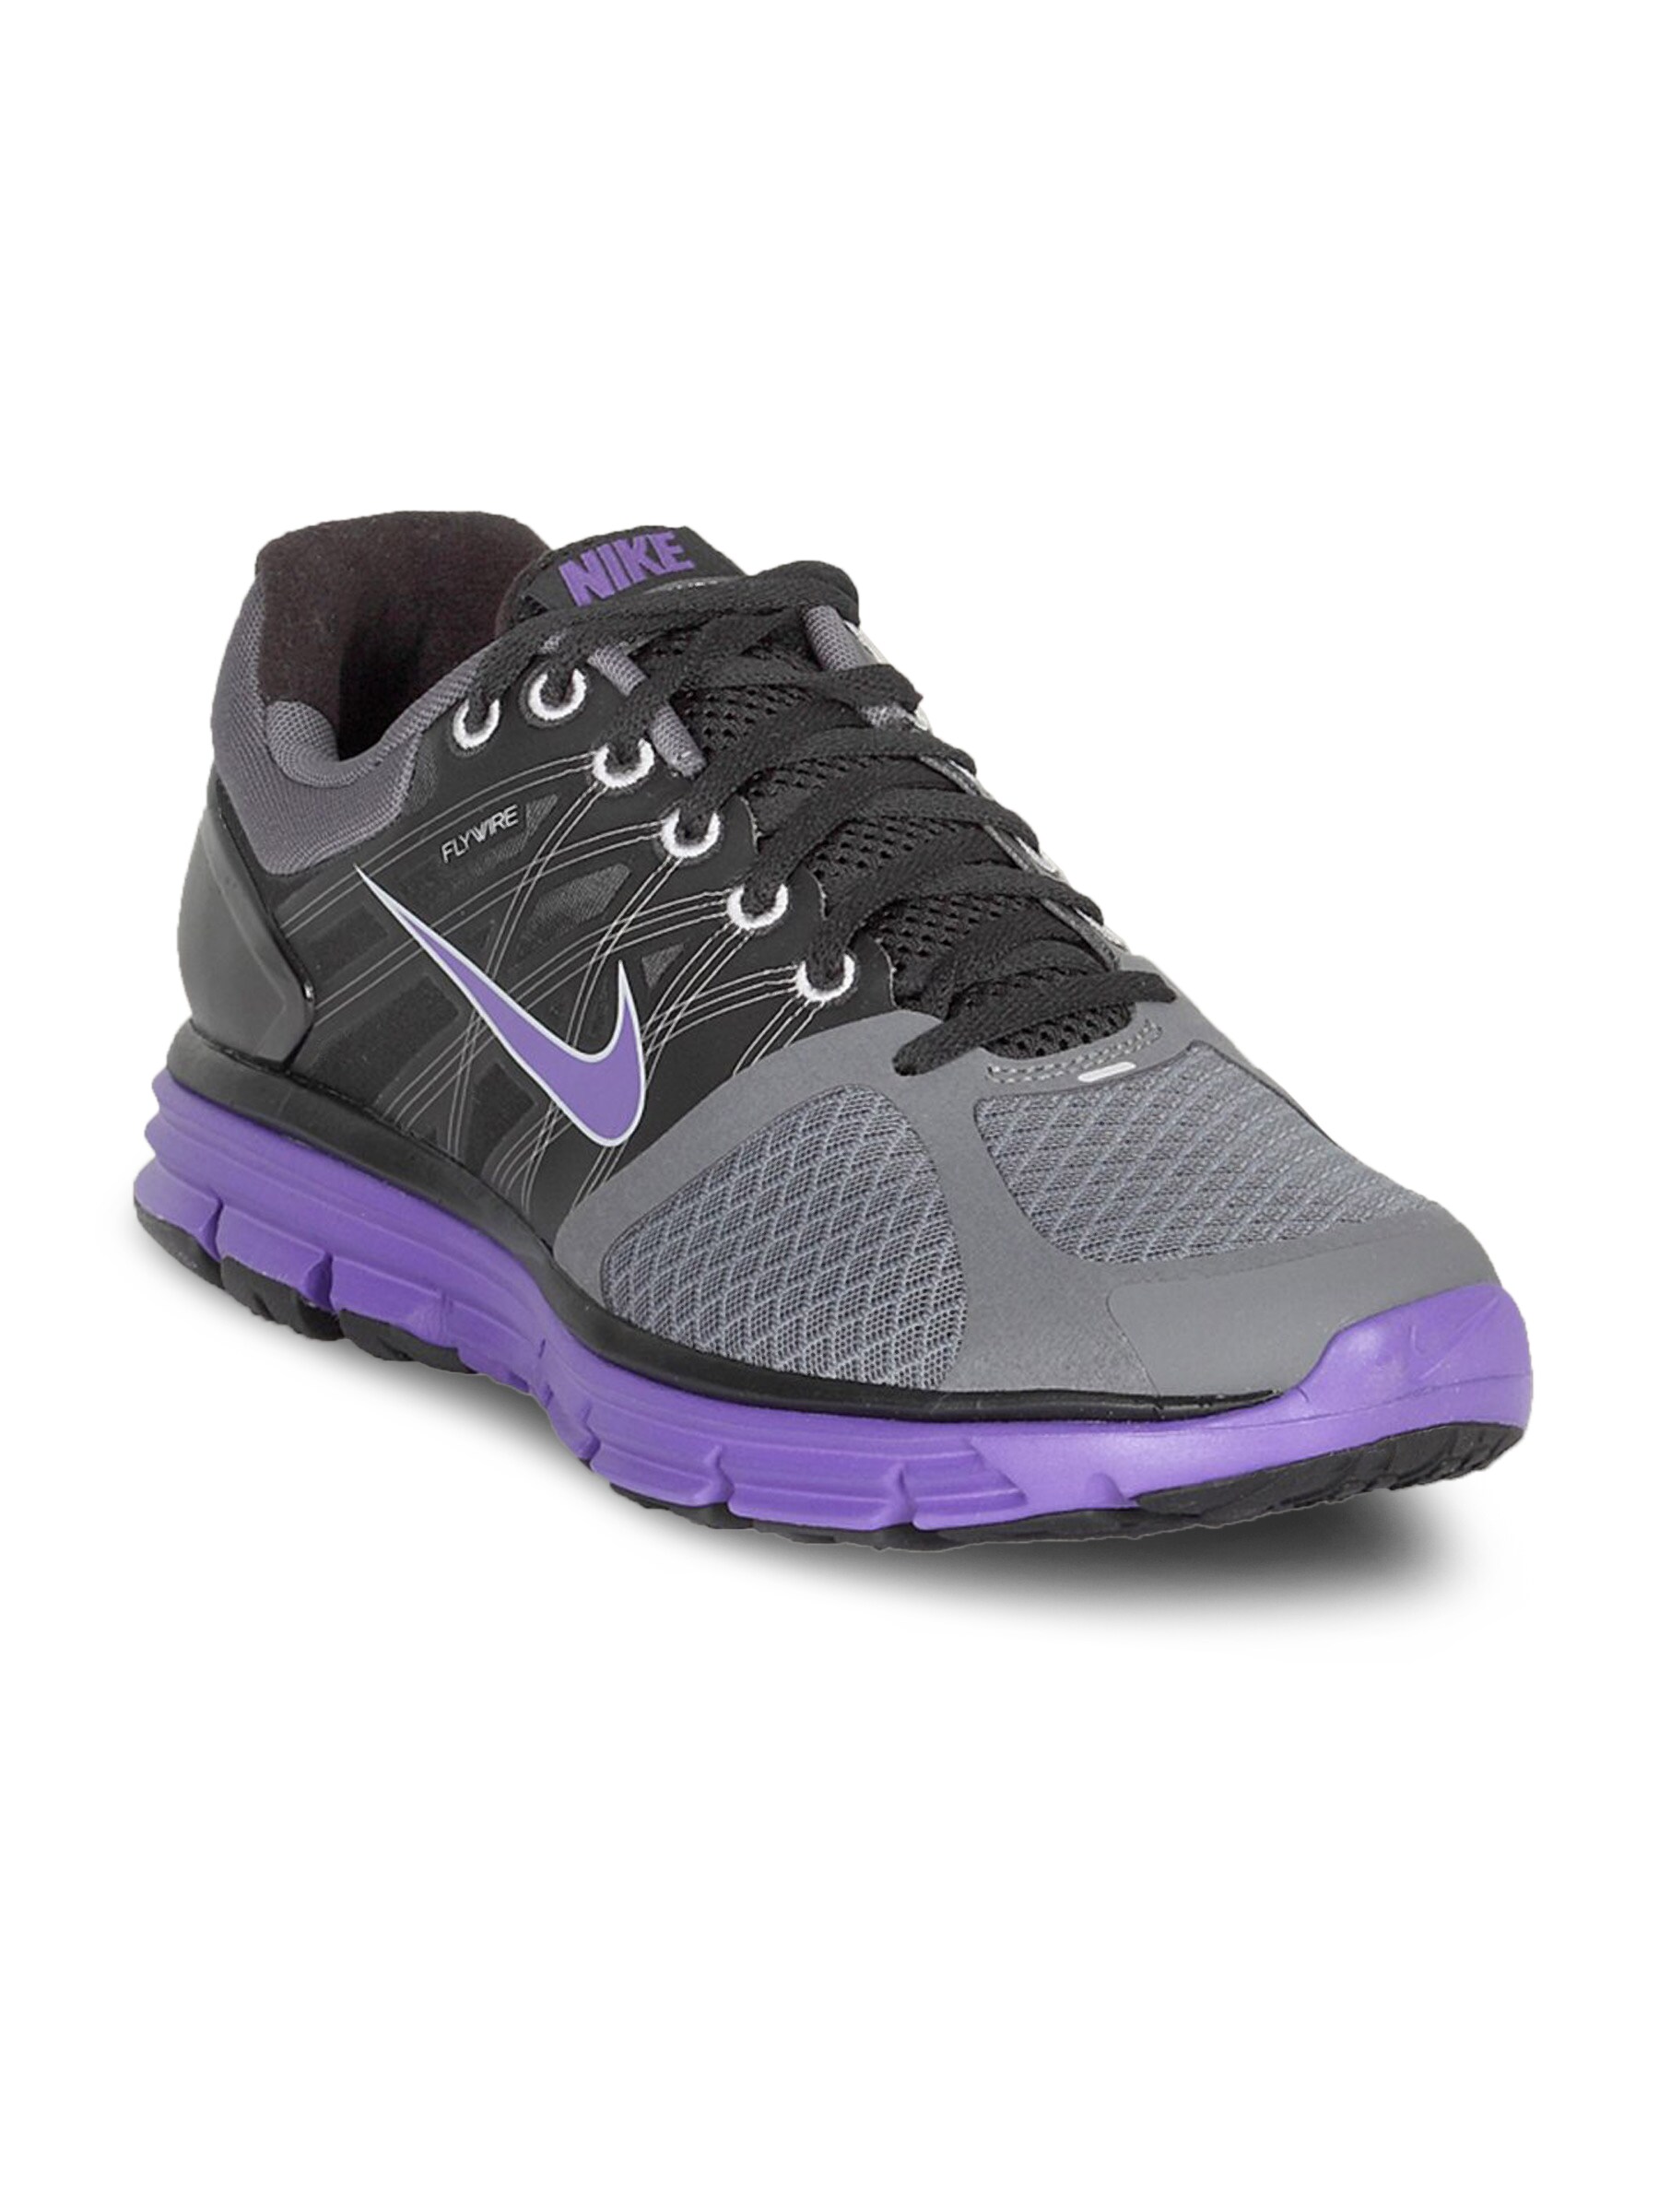 Nike Men's Lunar Glide Grey Black Purple Shoe